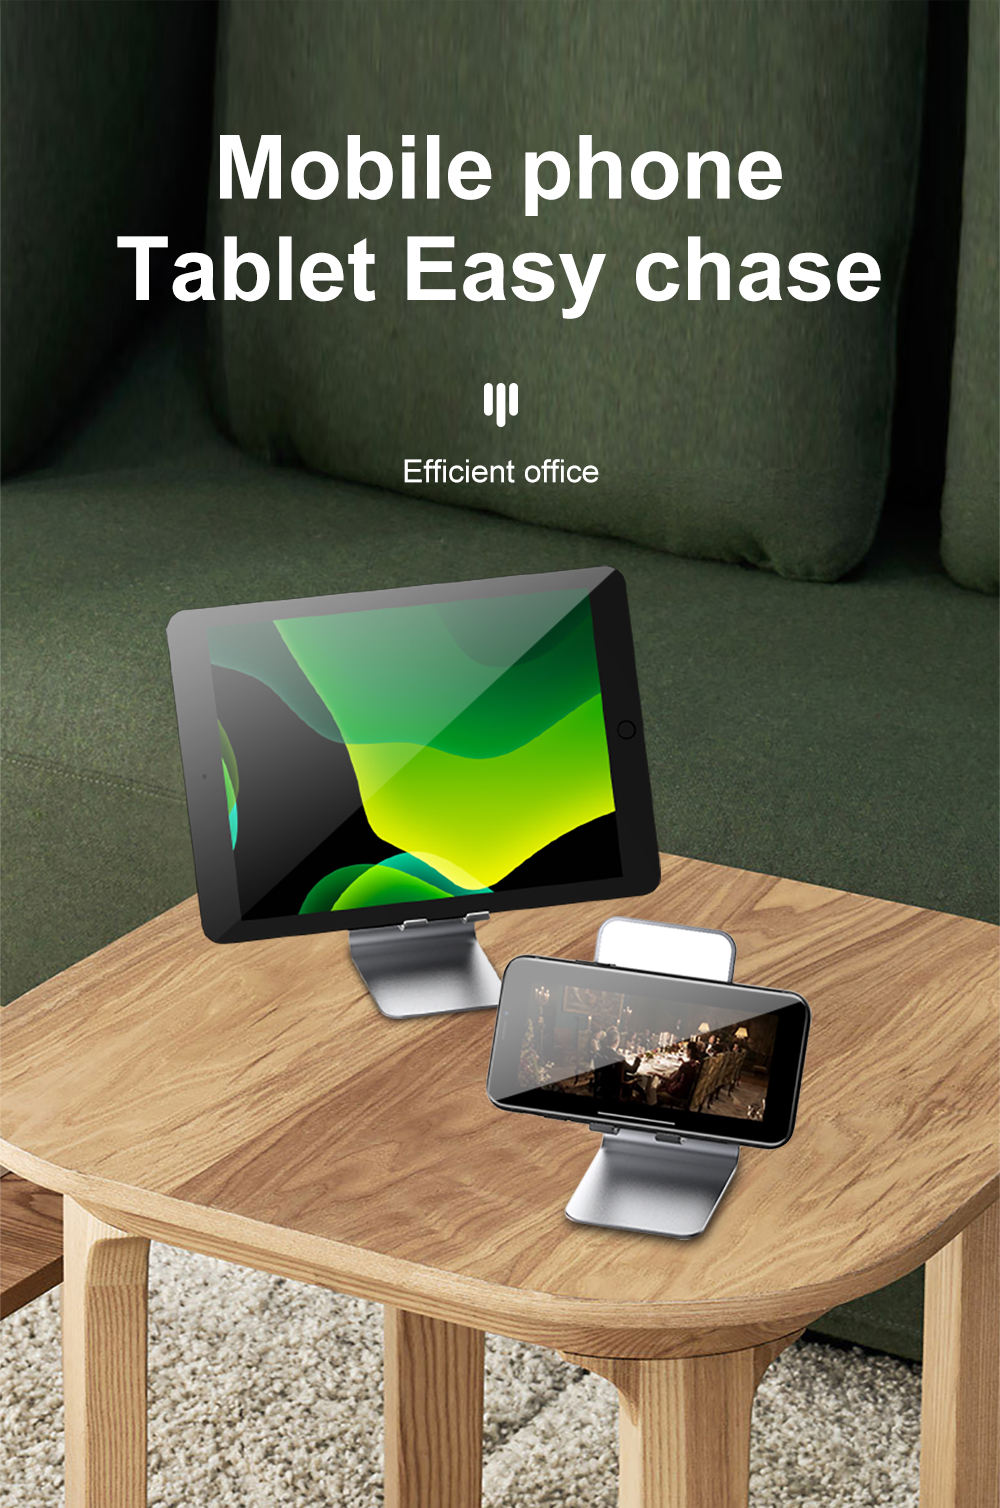 R-JUST-Foldable-Desktop-Metal-Holder-Bracket-Live-Mirror-Stand-for-Tablet-Smartphone-1677113-4